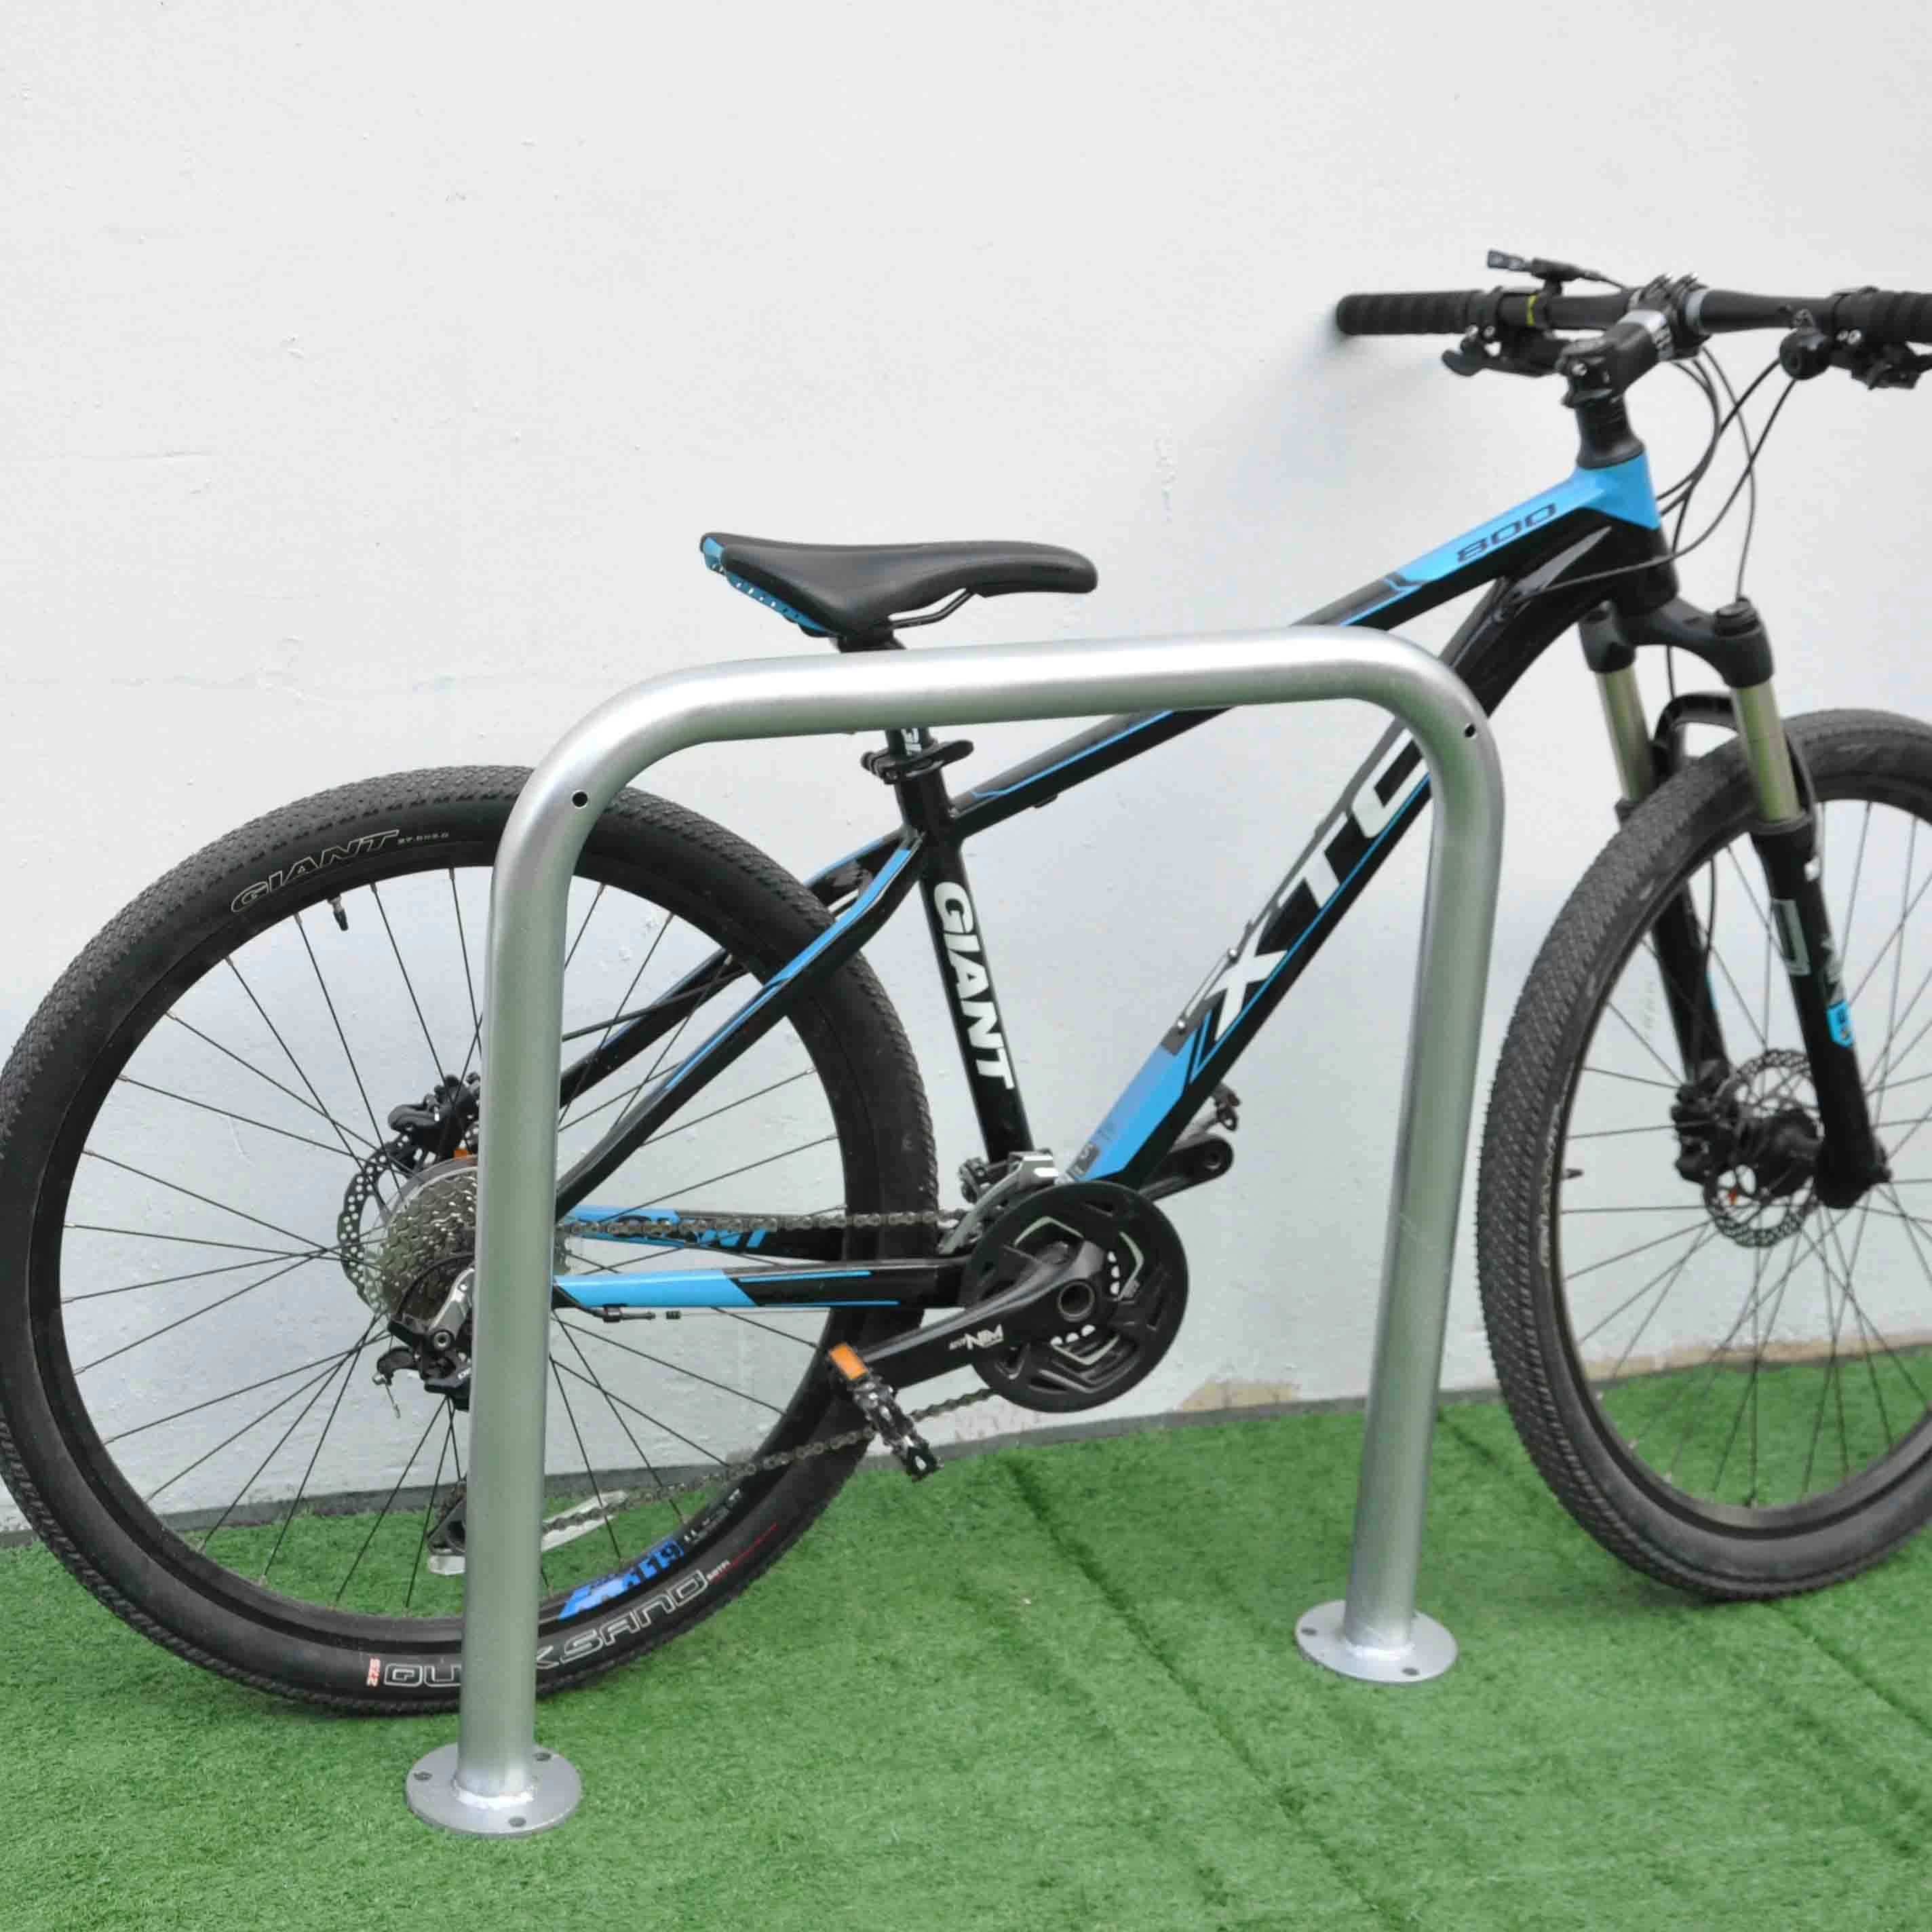 BLUECHAIN Soporte para Bicicleta Suelo / Techo para 2 Bicicletas -  aluminio/negro